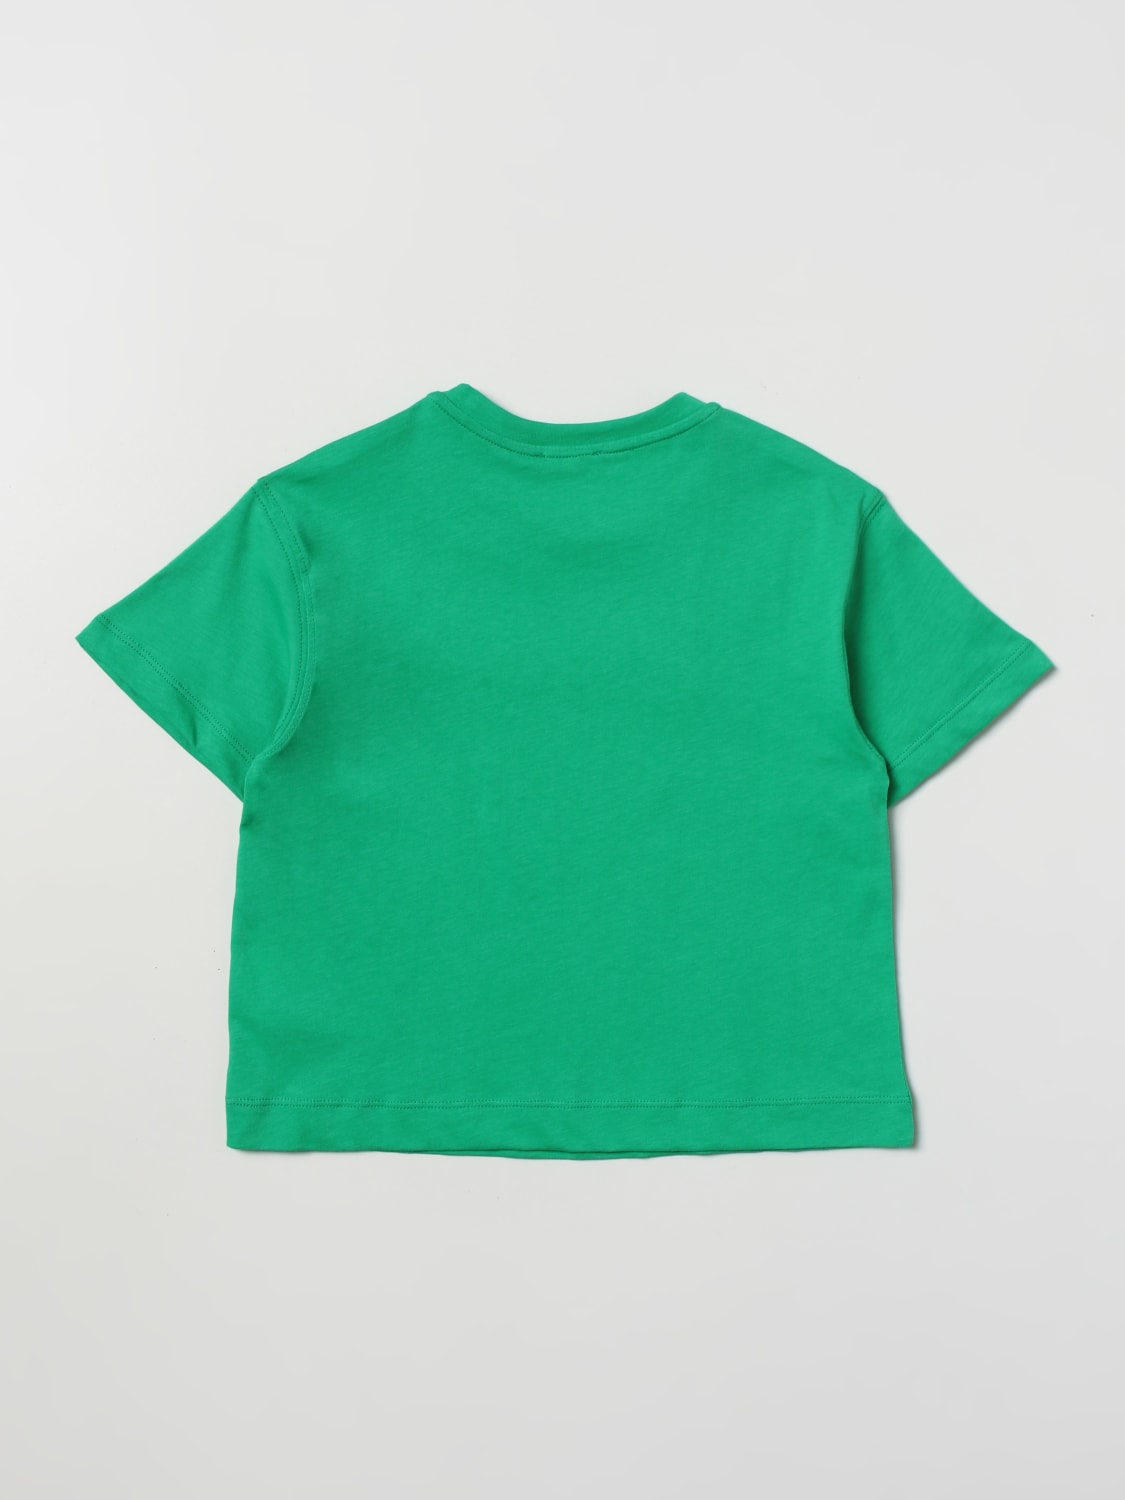 Tシャツ Chiara Ferragni: Tシャツ Chiara Ferragni 女の子 グリーン 2